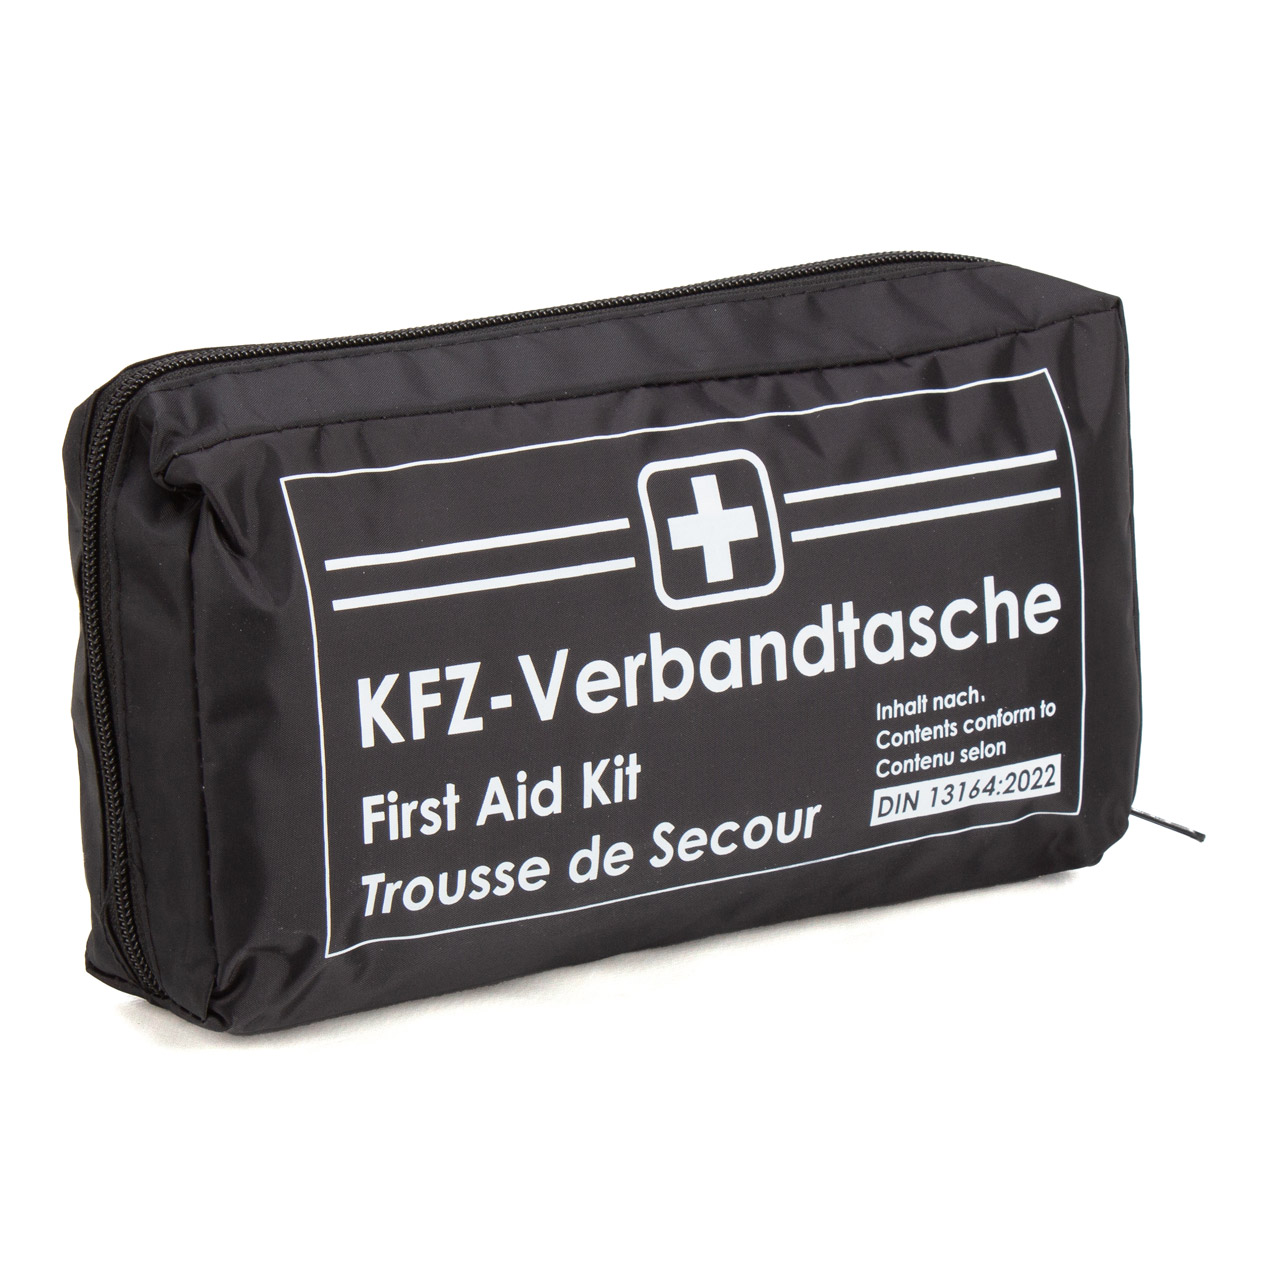 KFZ-Verbandtasche DIN 13164 schwarz